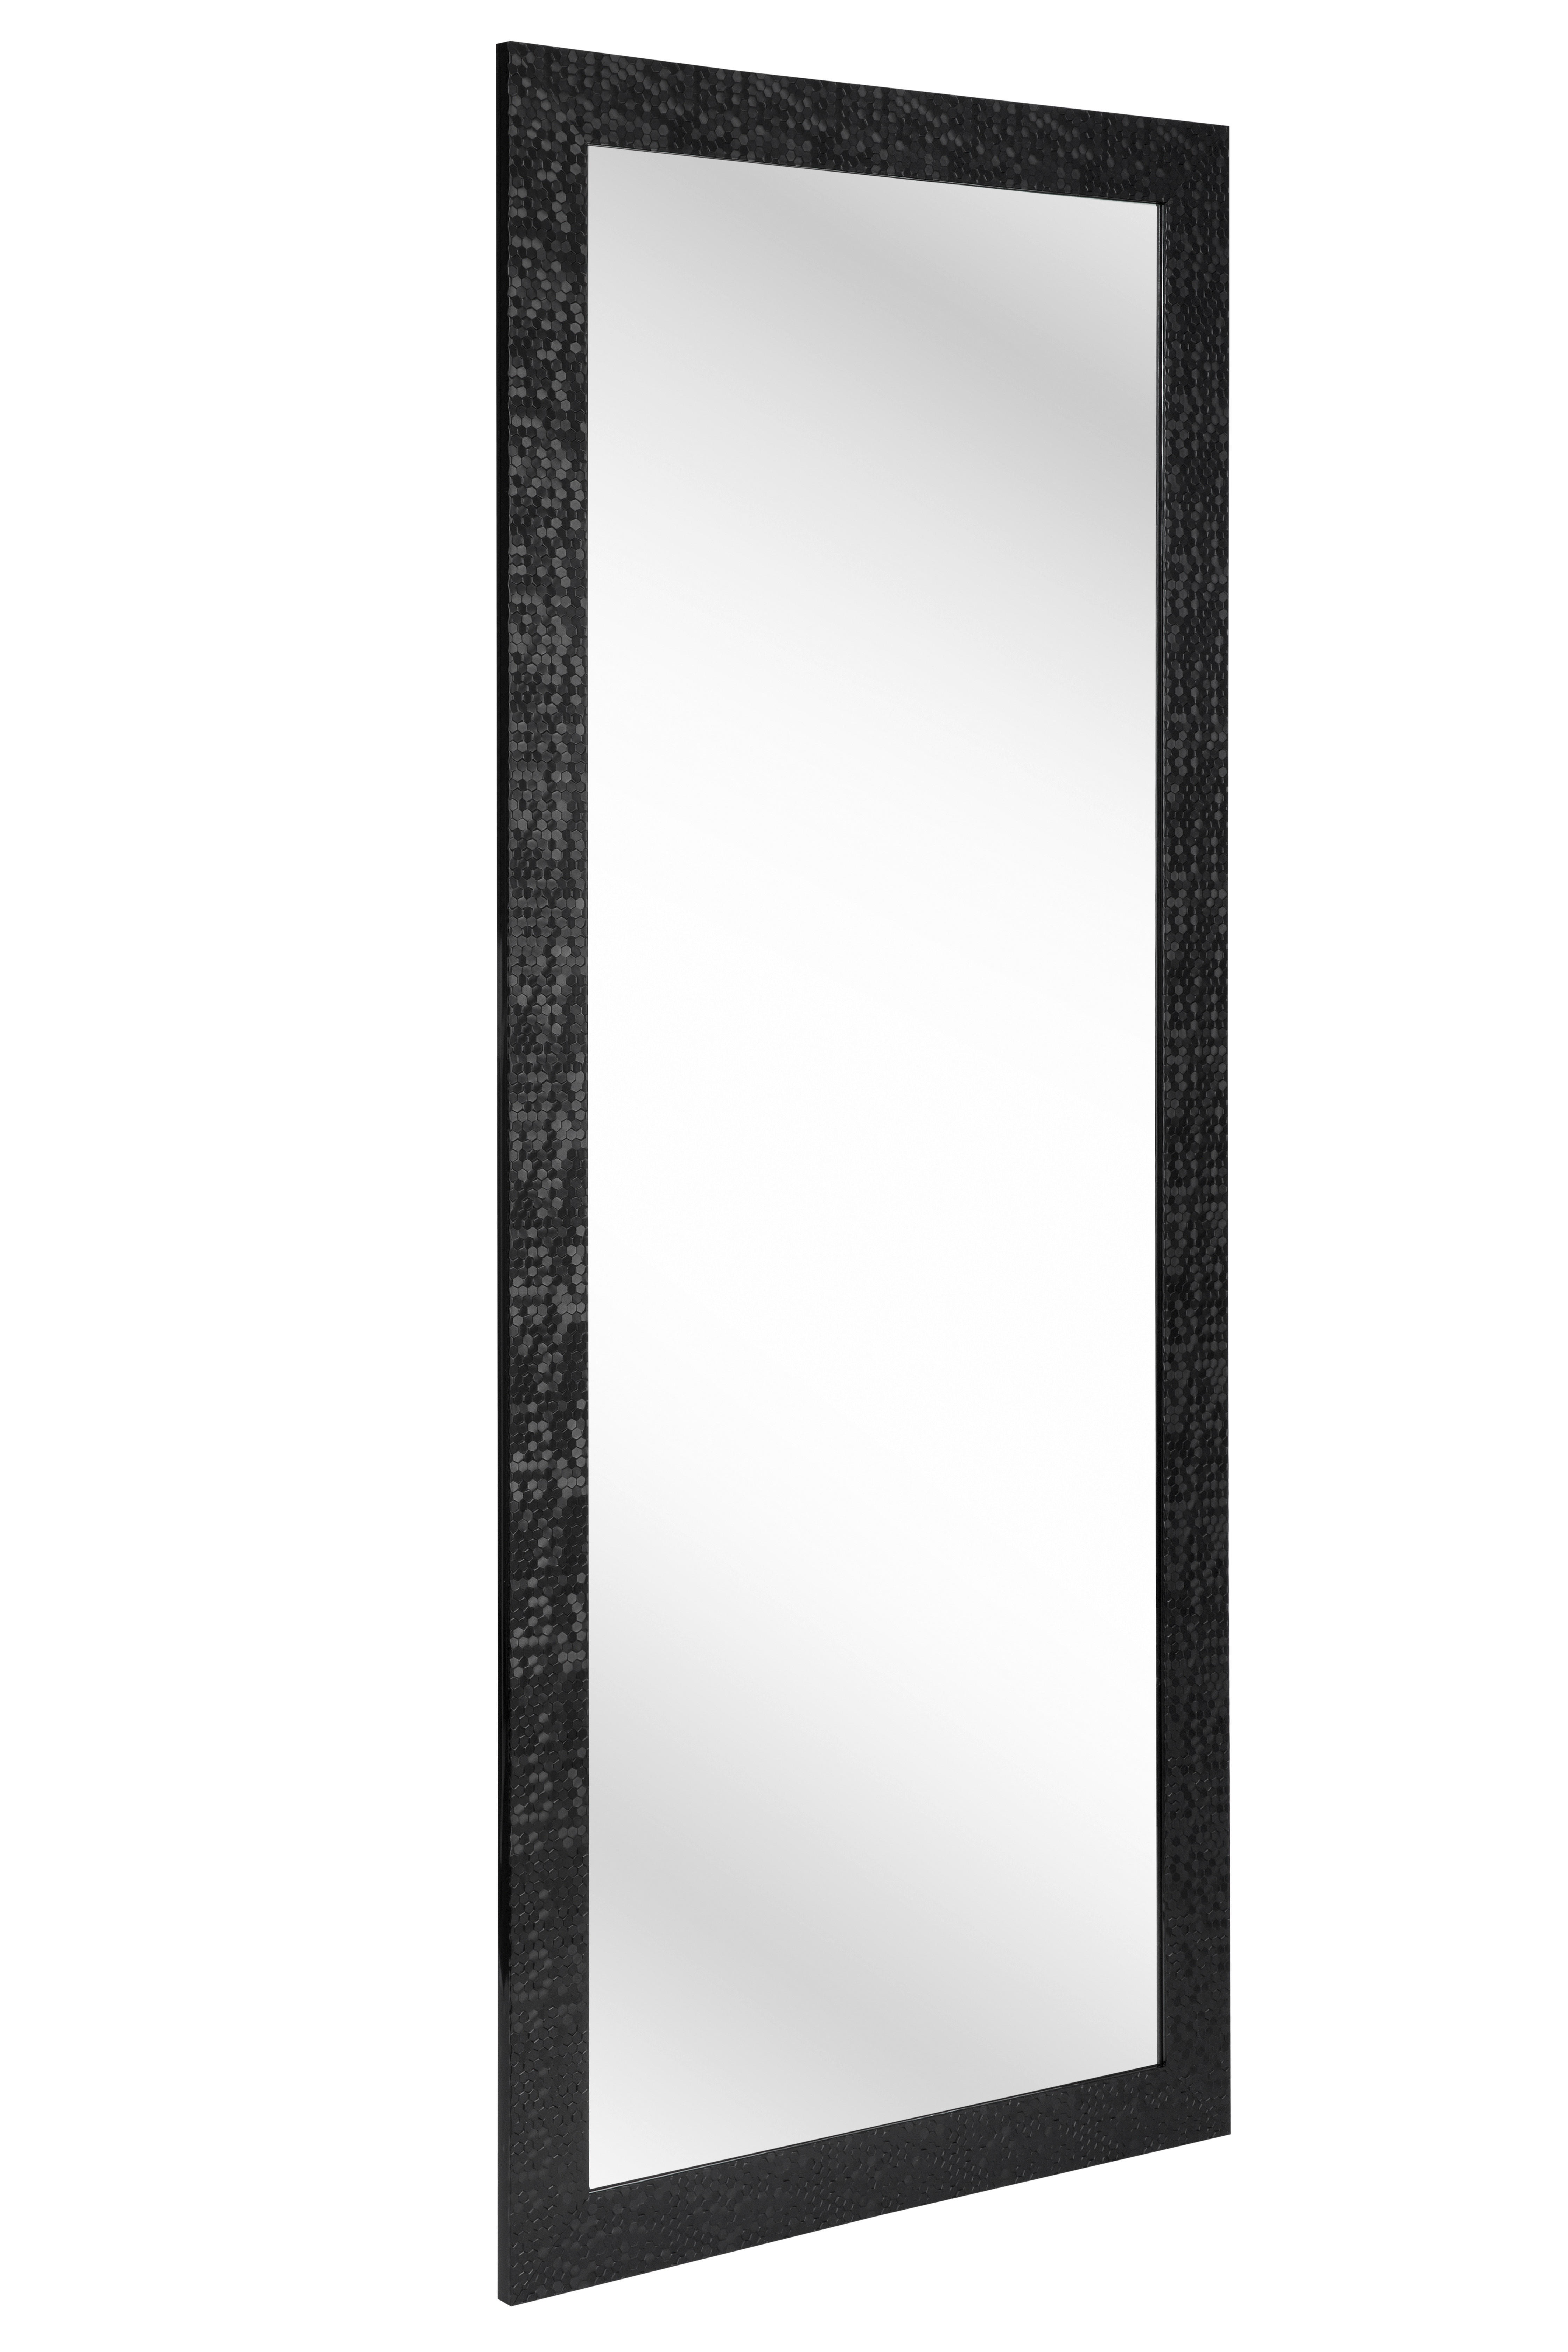 WANDSPIEGEL Schwarz  - Schwarz, LIFESTYLE, Glas/Kunststoff (70/170/2cm) - Carryhome